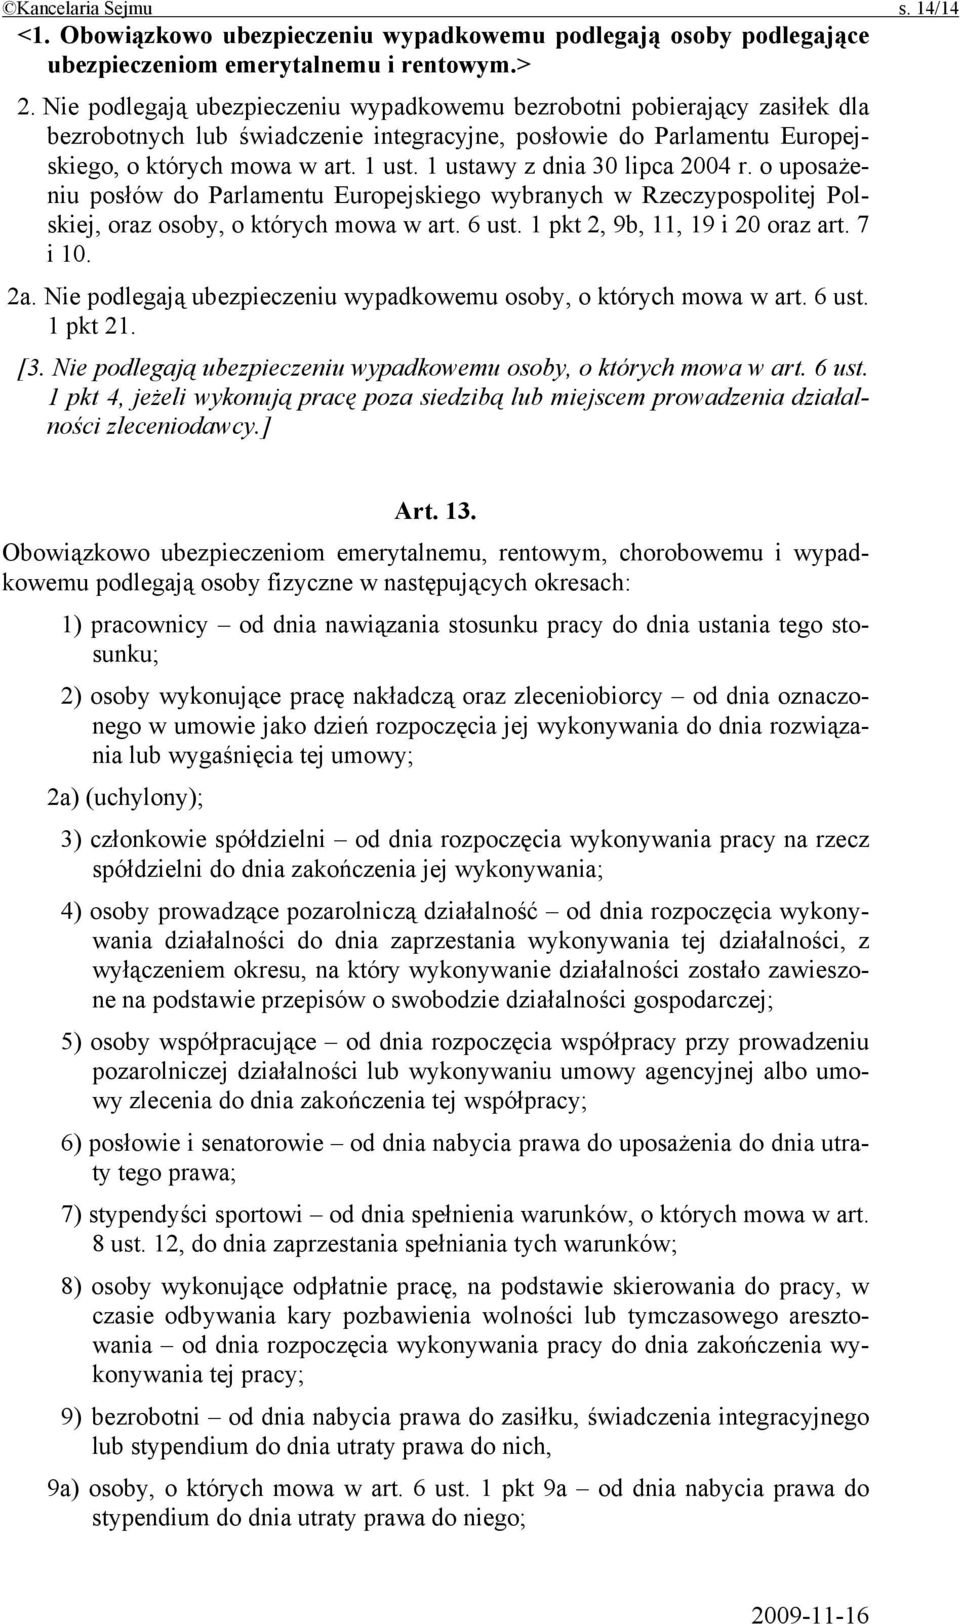 1 ustawy z dnia 30 lipca 2004 r. o uposażeniu posłów do Parlamentu Europejskiego wybranych w Rzeczypospolitej Polskiej, oraz osoby, o których mowa w art. 6 ust. 1 pkt 2, 9b, 11, 19 i 20 oraz art.